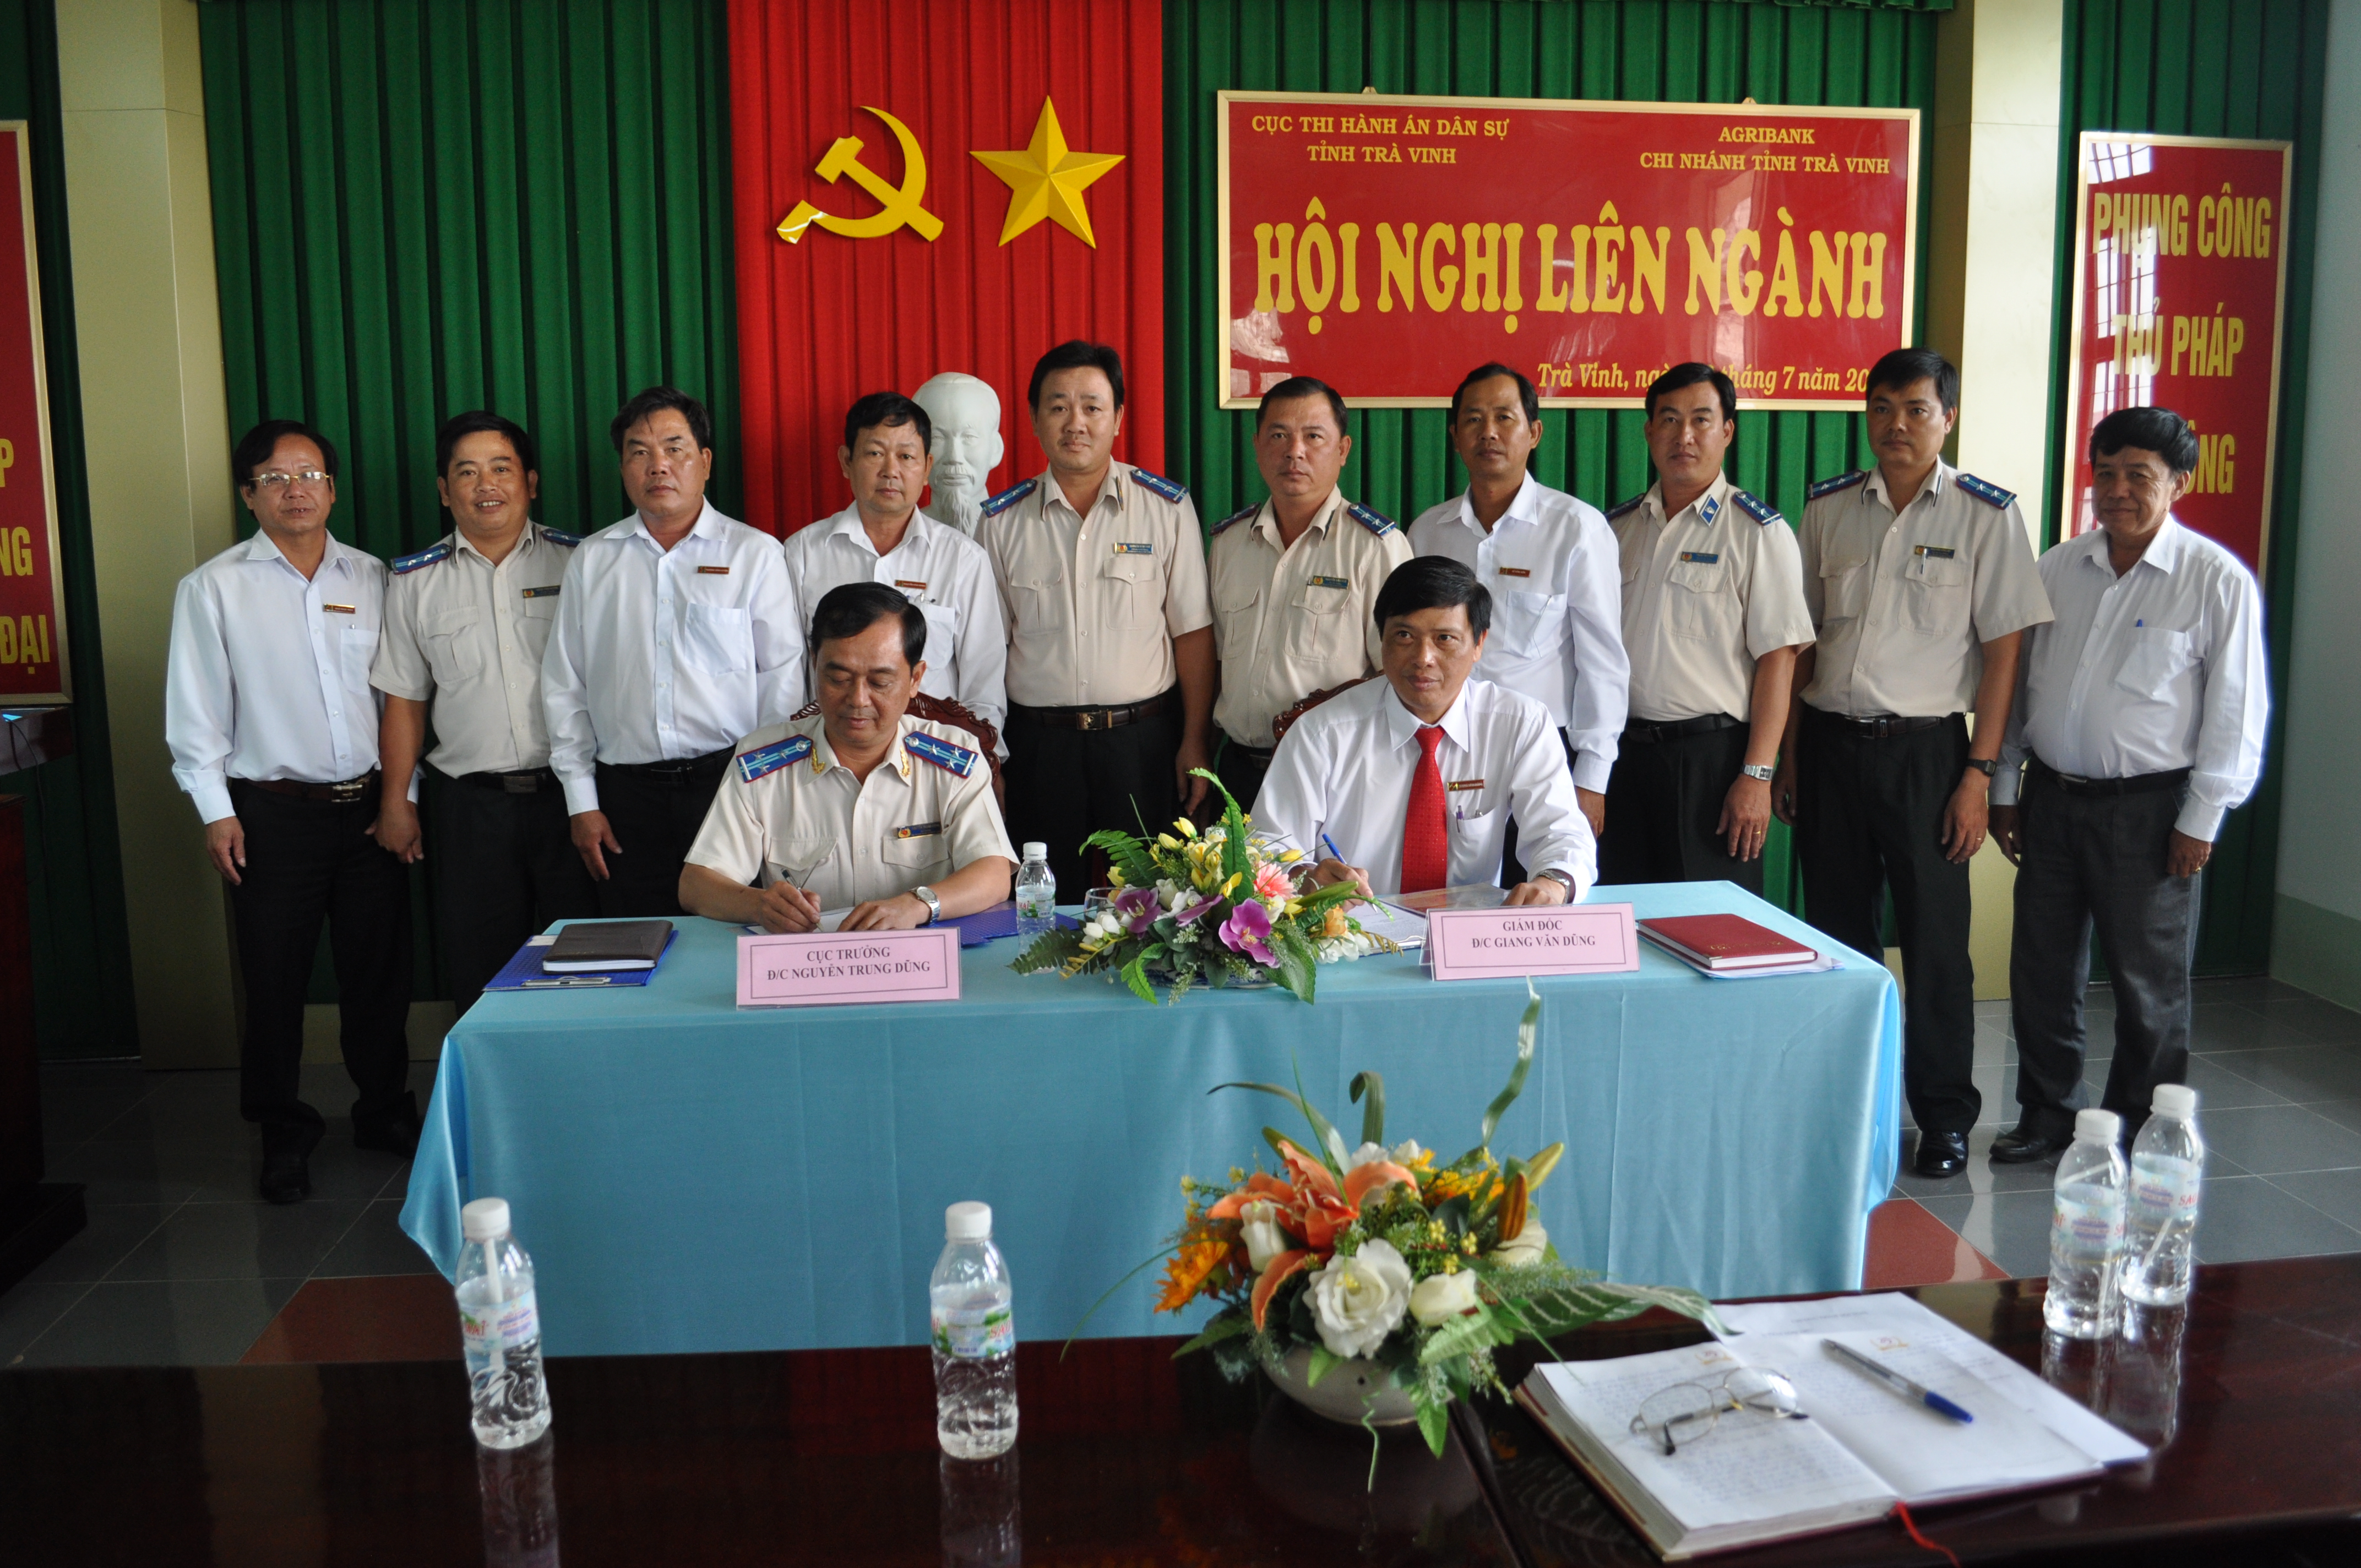 Cục Thi hành án dân sự tỉnh Trà Vinh phối hợp với Agribank chi nhánh tỉnh Trà Vinh tổ chức hội nghị liên ngành.